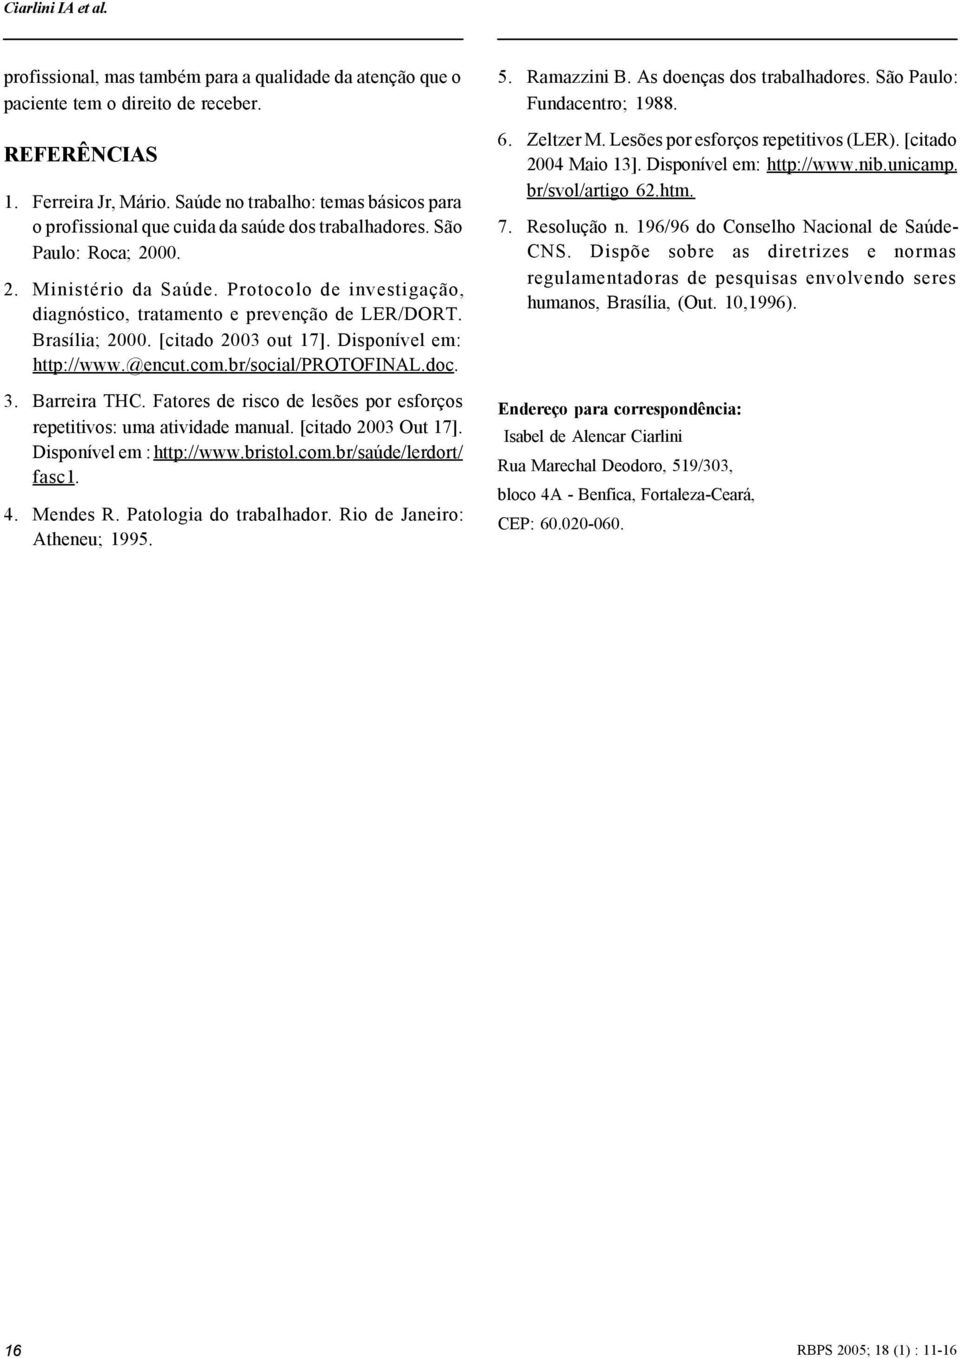 Protocolo de investigação, diagnóstico, tratamento e prevenção de LER/DORT. Brasília; 2000. [citado 2003 out 17]. Disponível em: http://www.@encut.com.br/social/protofinal.doc. 3. Barreira THC.